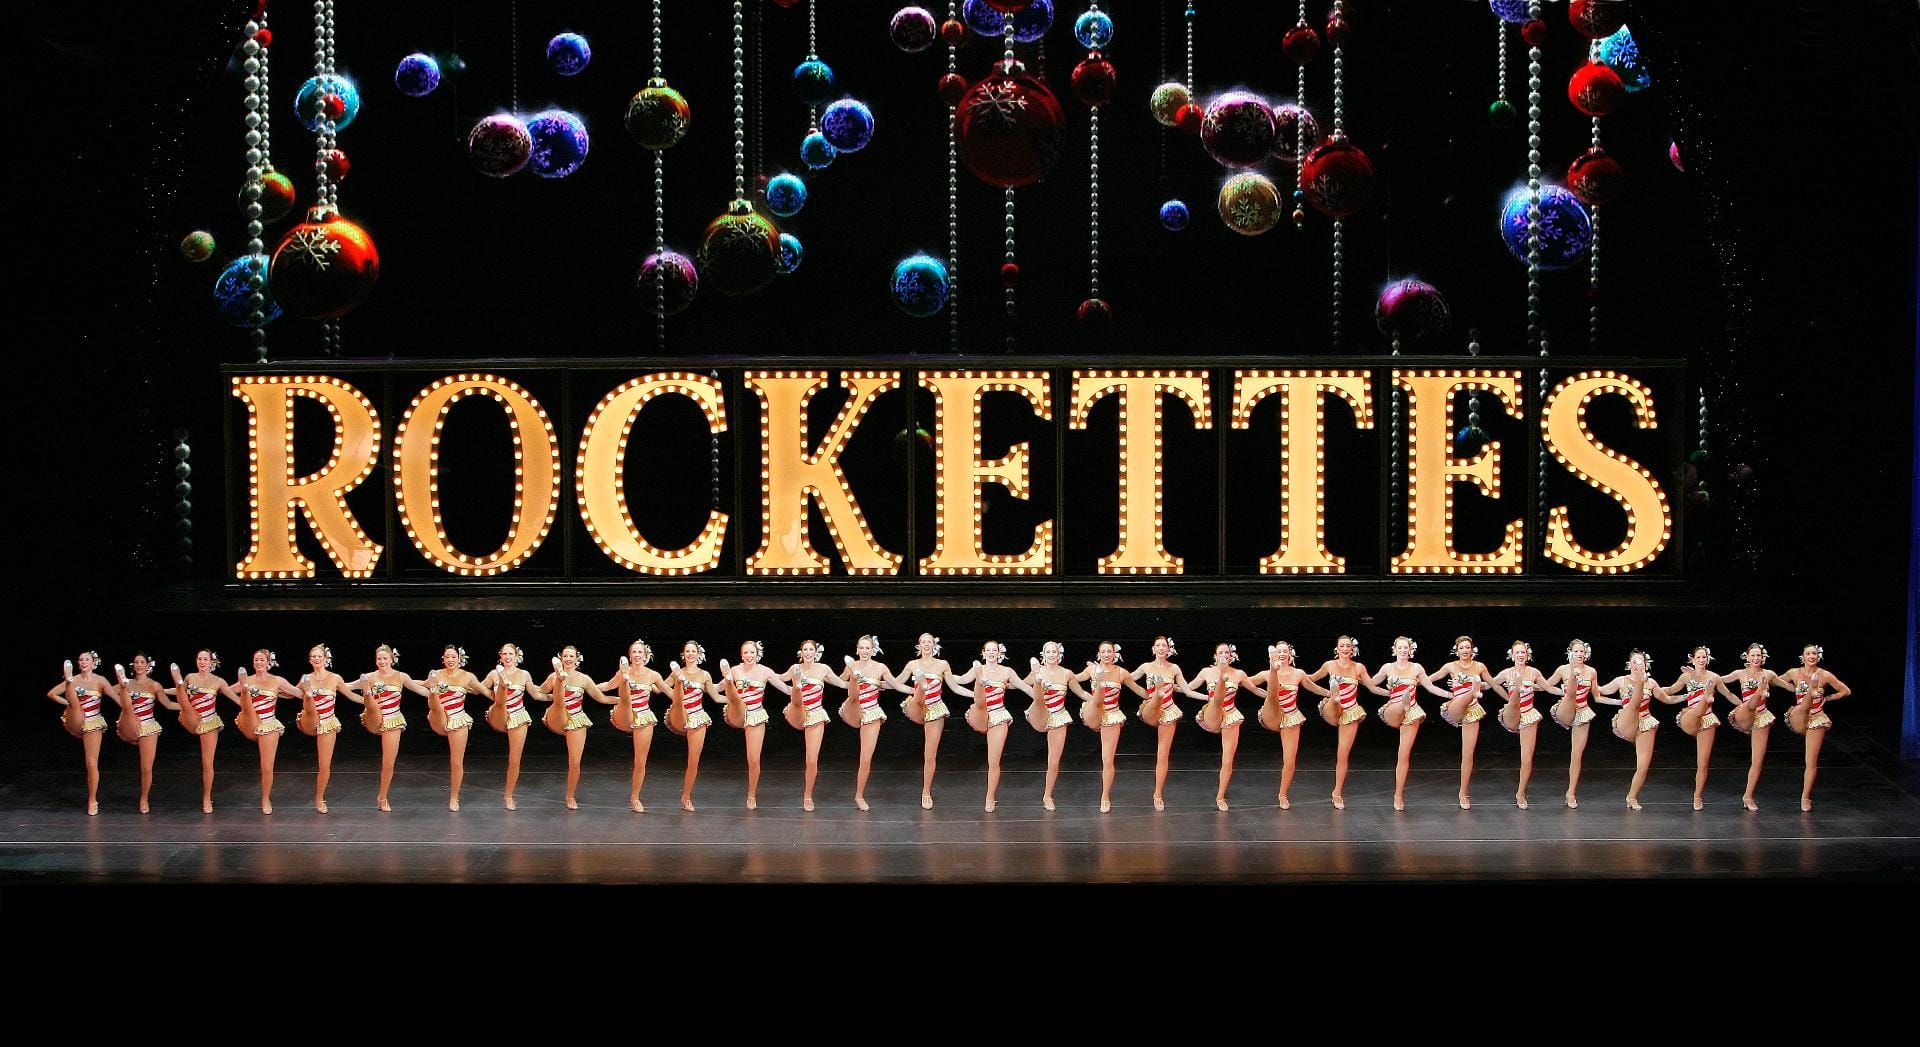 Seit 1932 werfen die Rockettes-Girls beim "Christmas Spectacular" ihre endlos langen Beine in die Luft.